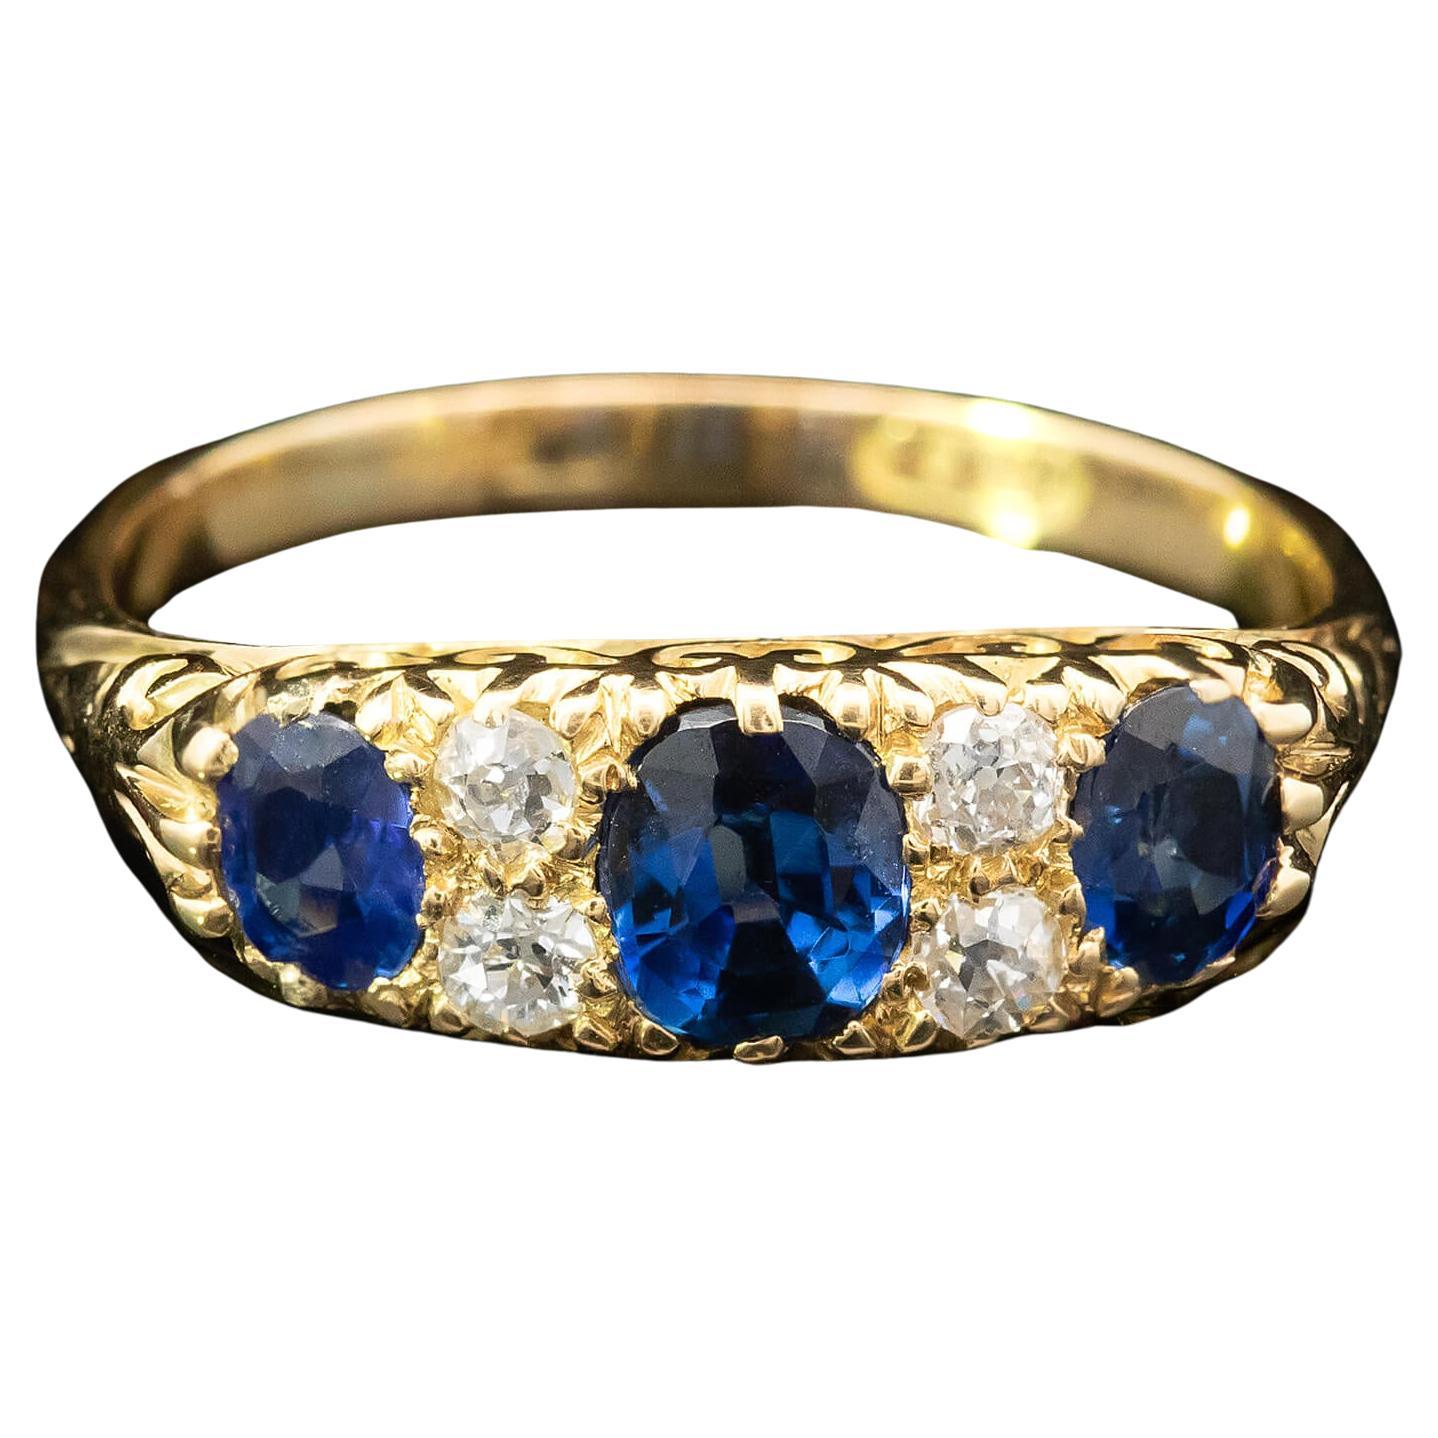 Viktorianischer halber Ring mit Saphiren und Diamanten, um 1890-1900